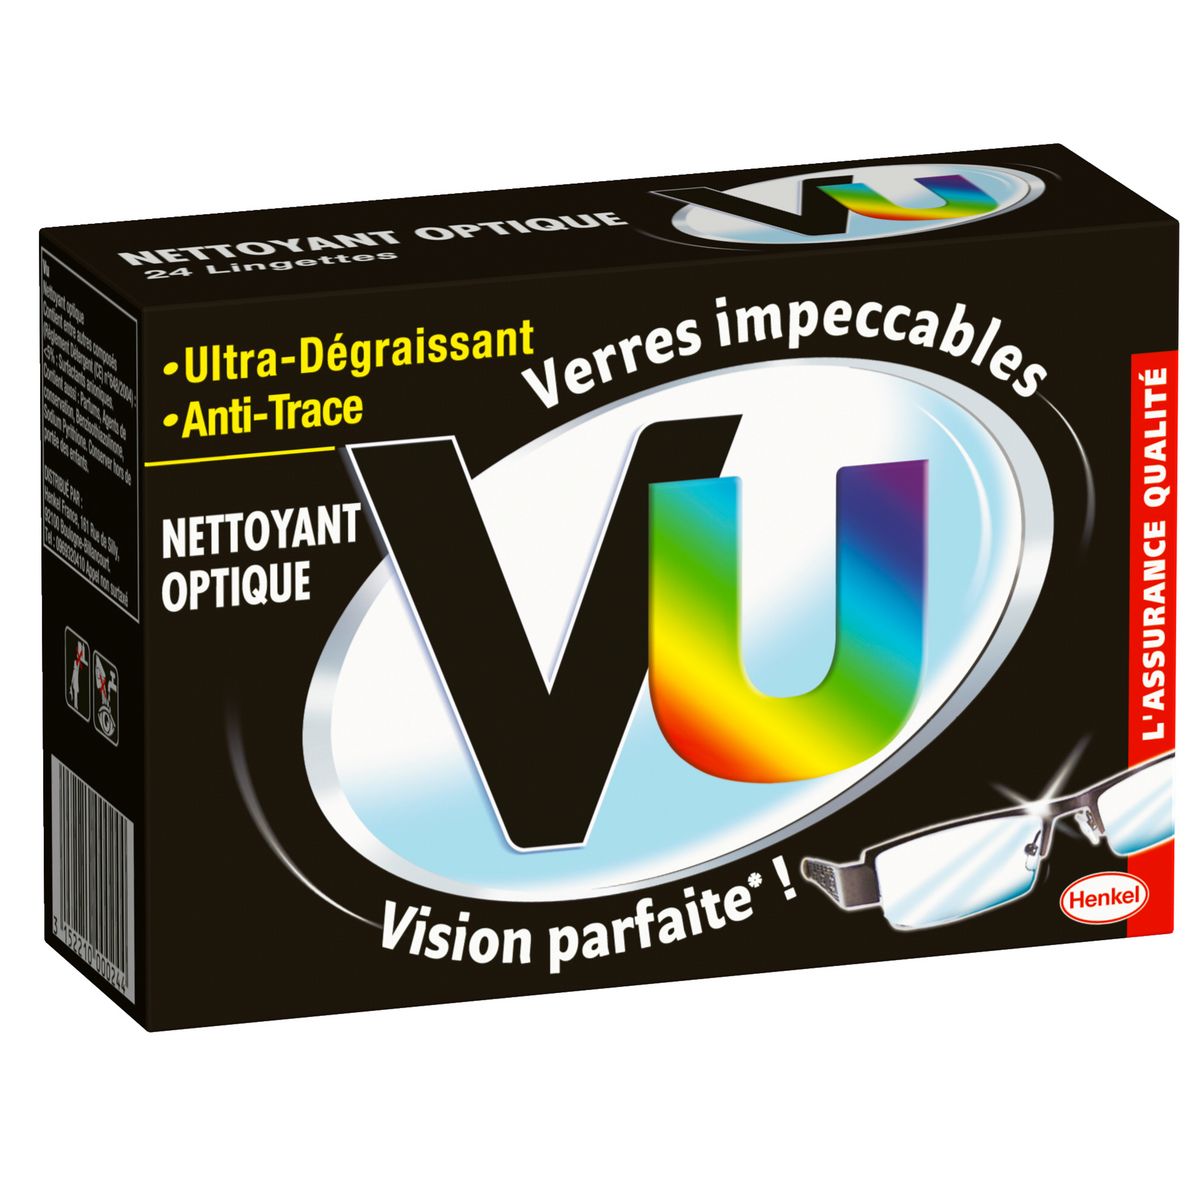 VU Lingettes nettoyantes optique ultra-dégraissantes et anti-traces 24 lingettes